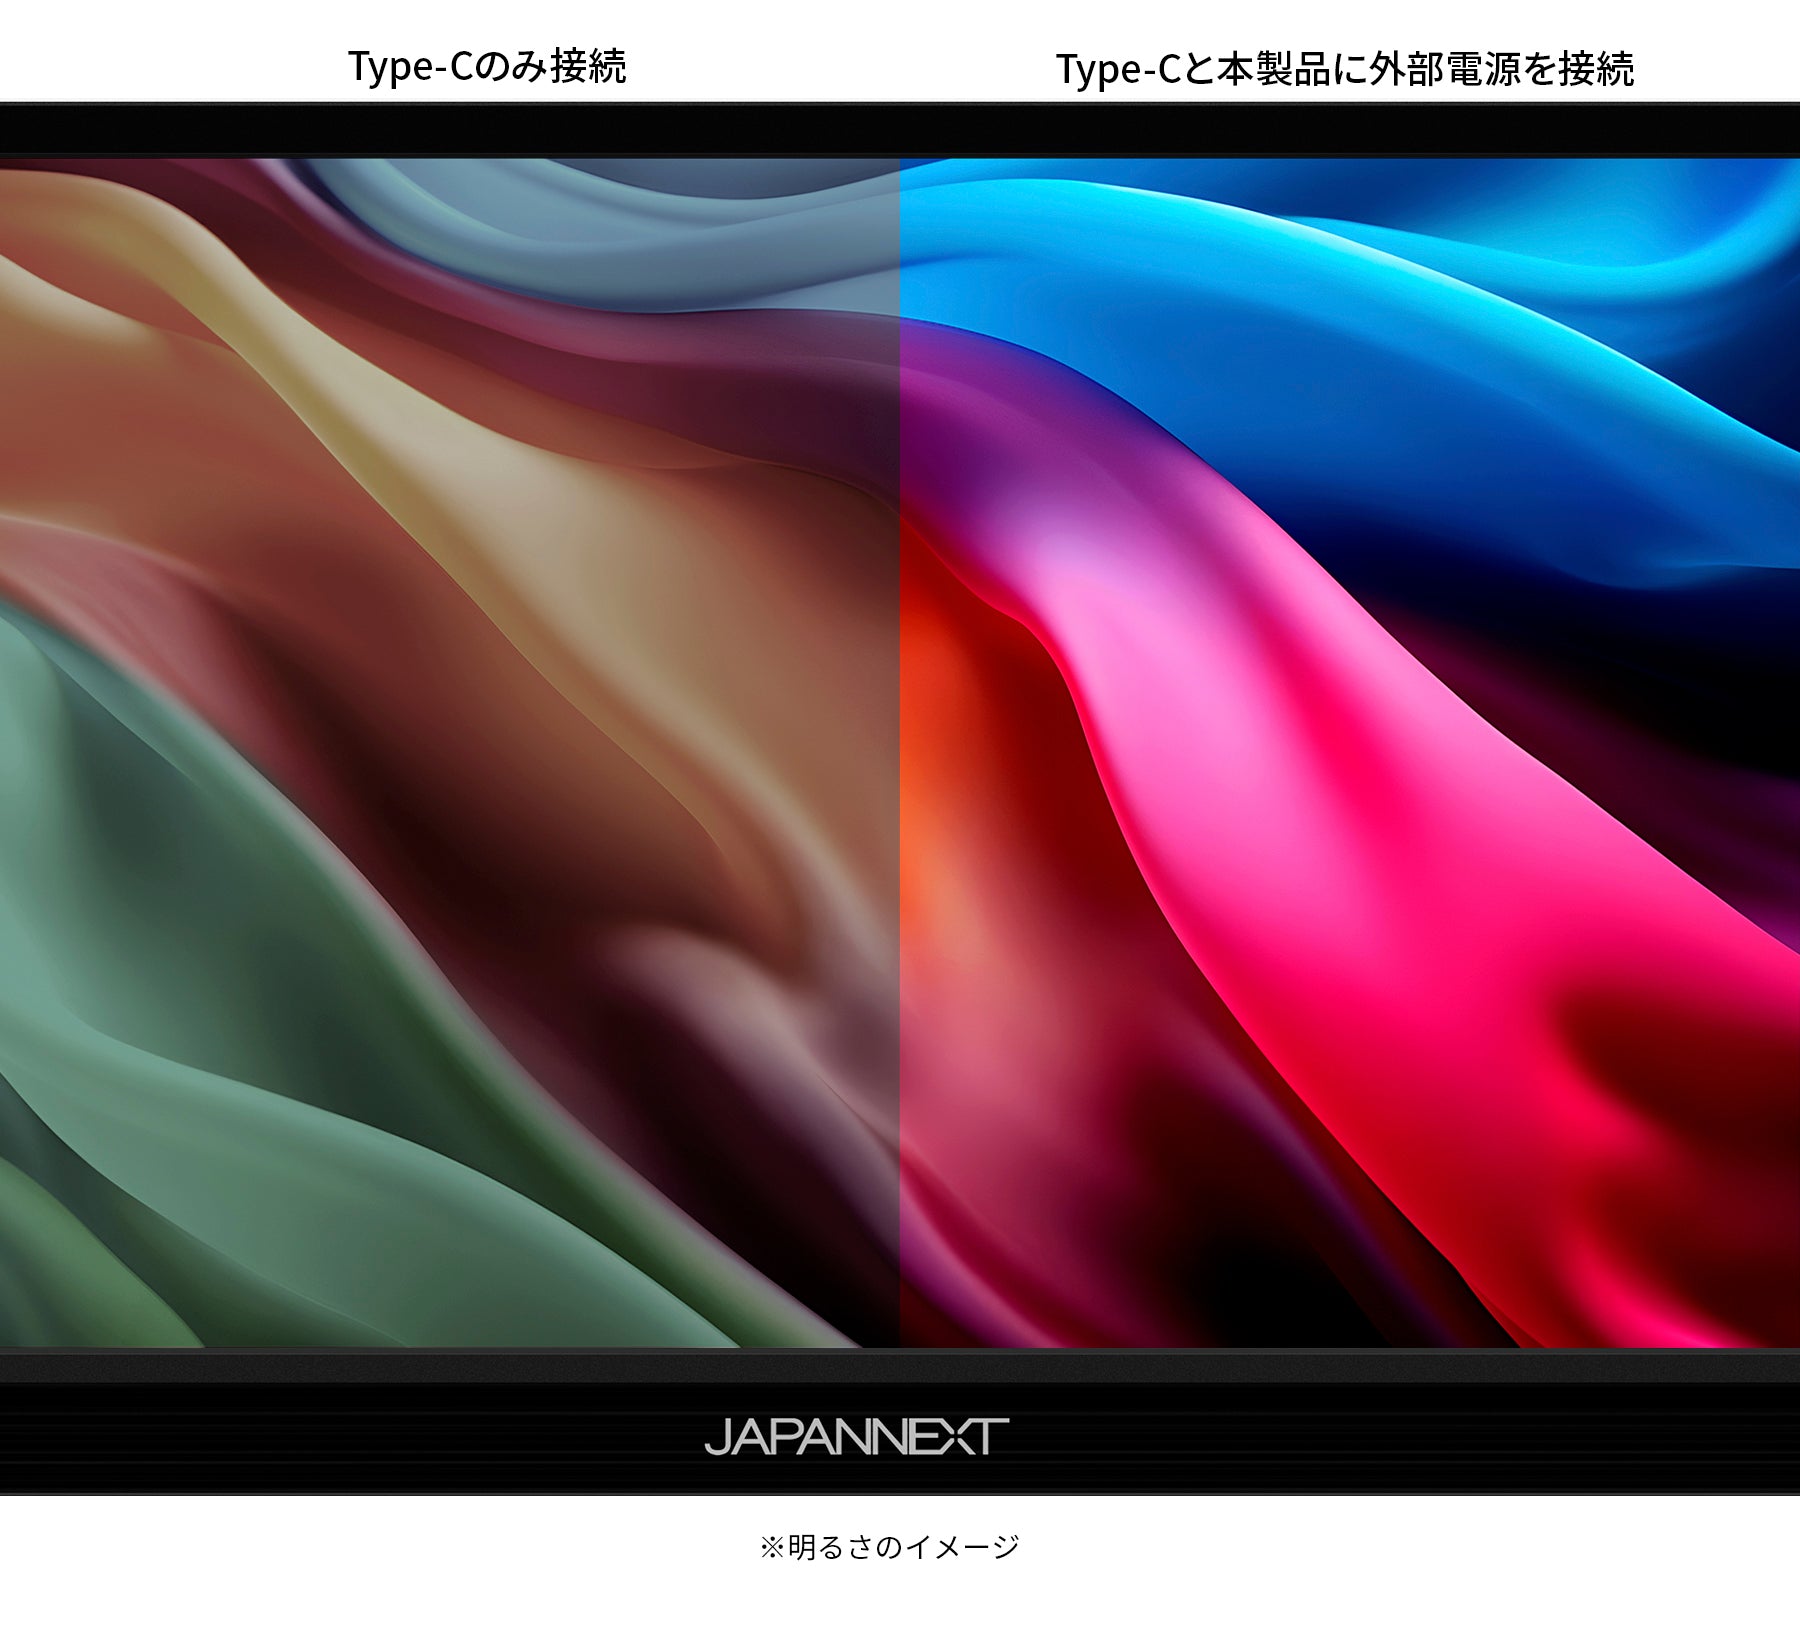 JAPANNEXT 13.3インチ QLED液晶 フルHD(1920x1080)モバイルモニター JN